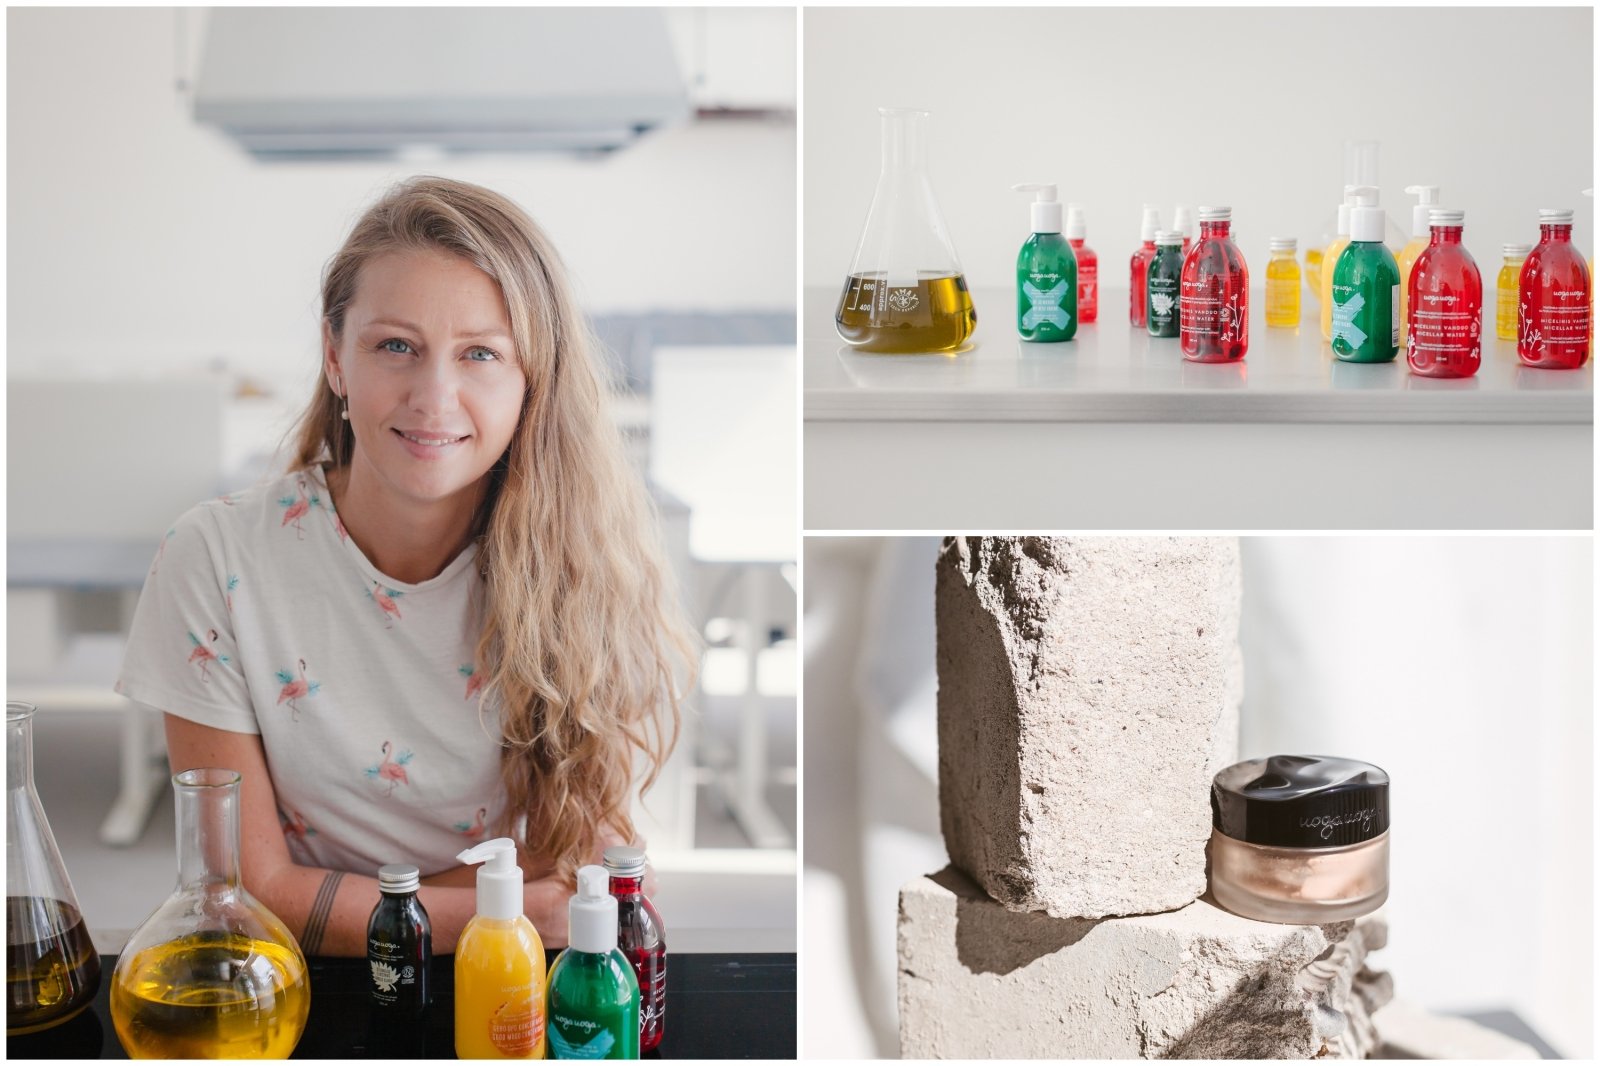 Sokolovska, łotewski producent litewskich kosmetyków – na kuszących targowiskach, pracy ręcznej i niekończących się poszukiwaniach